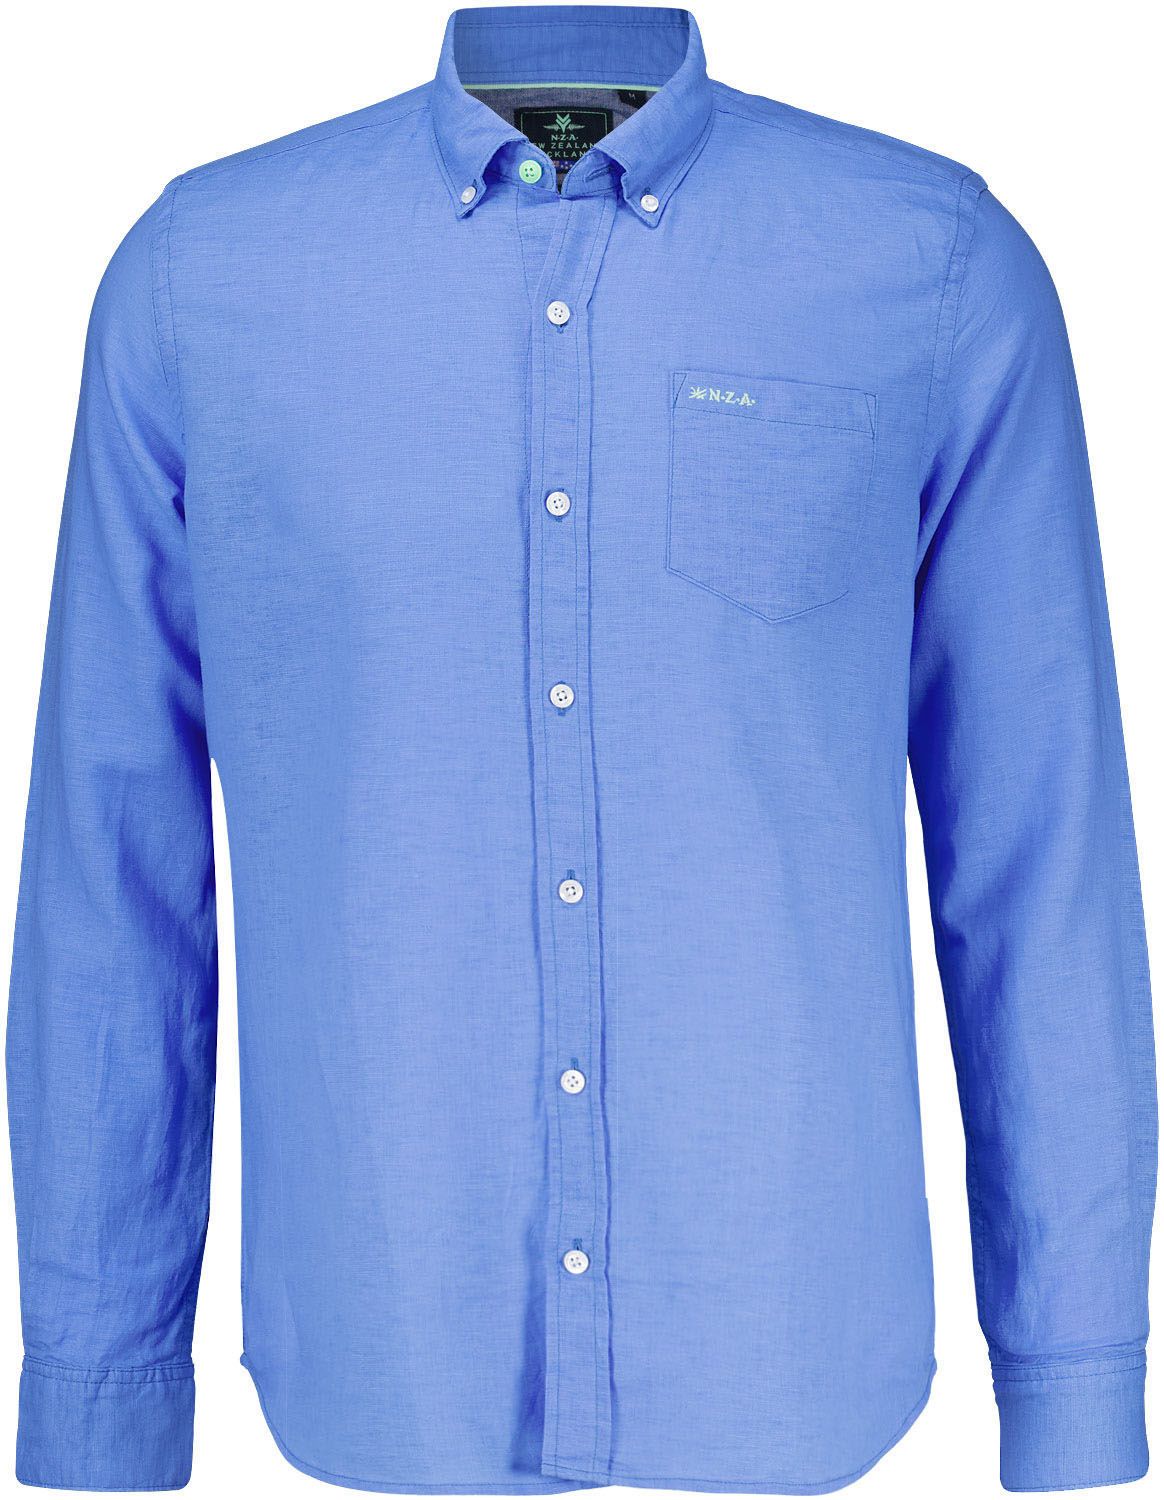 Overhemd Okarito Blauw